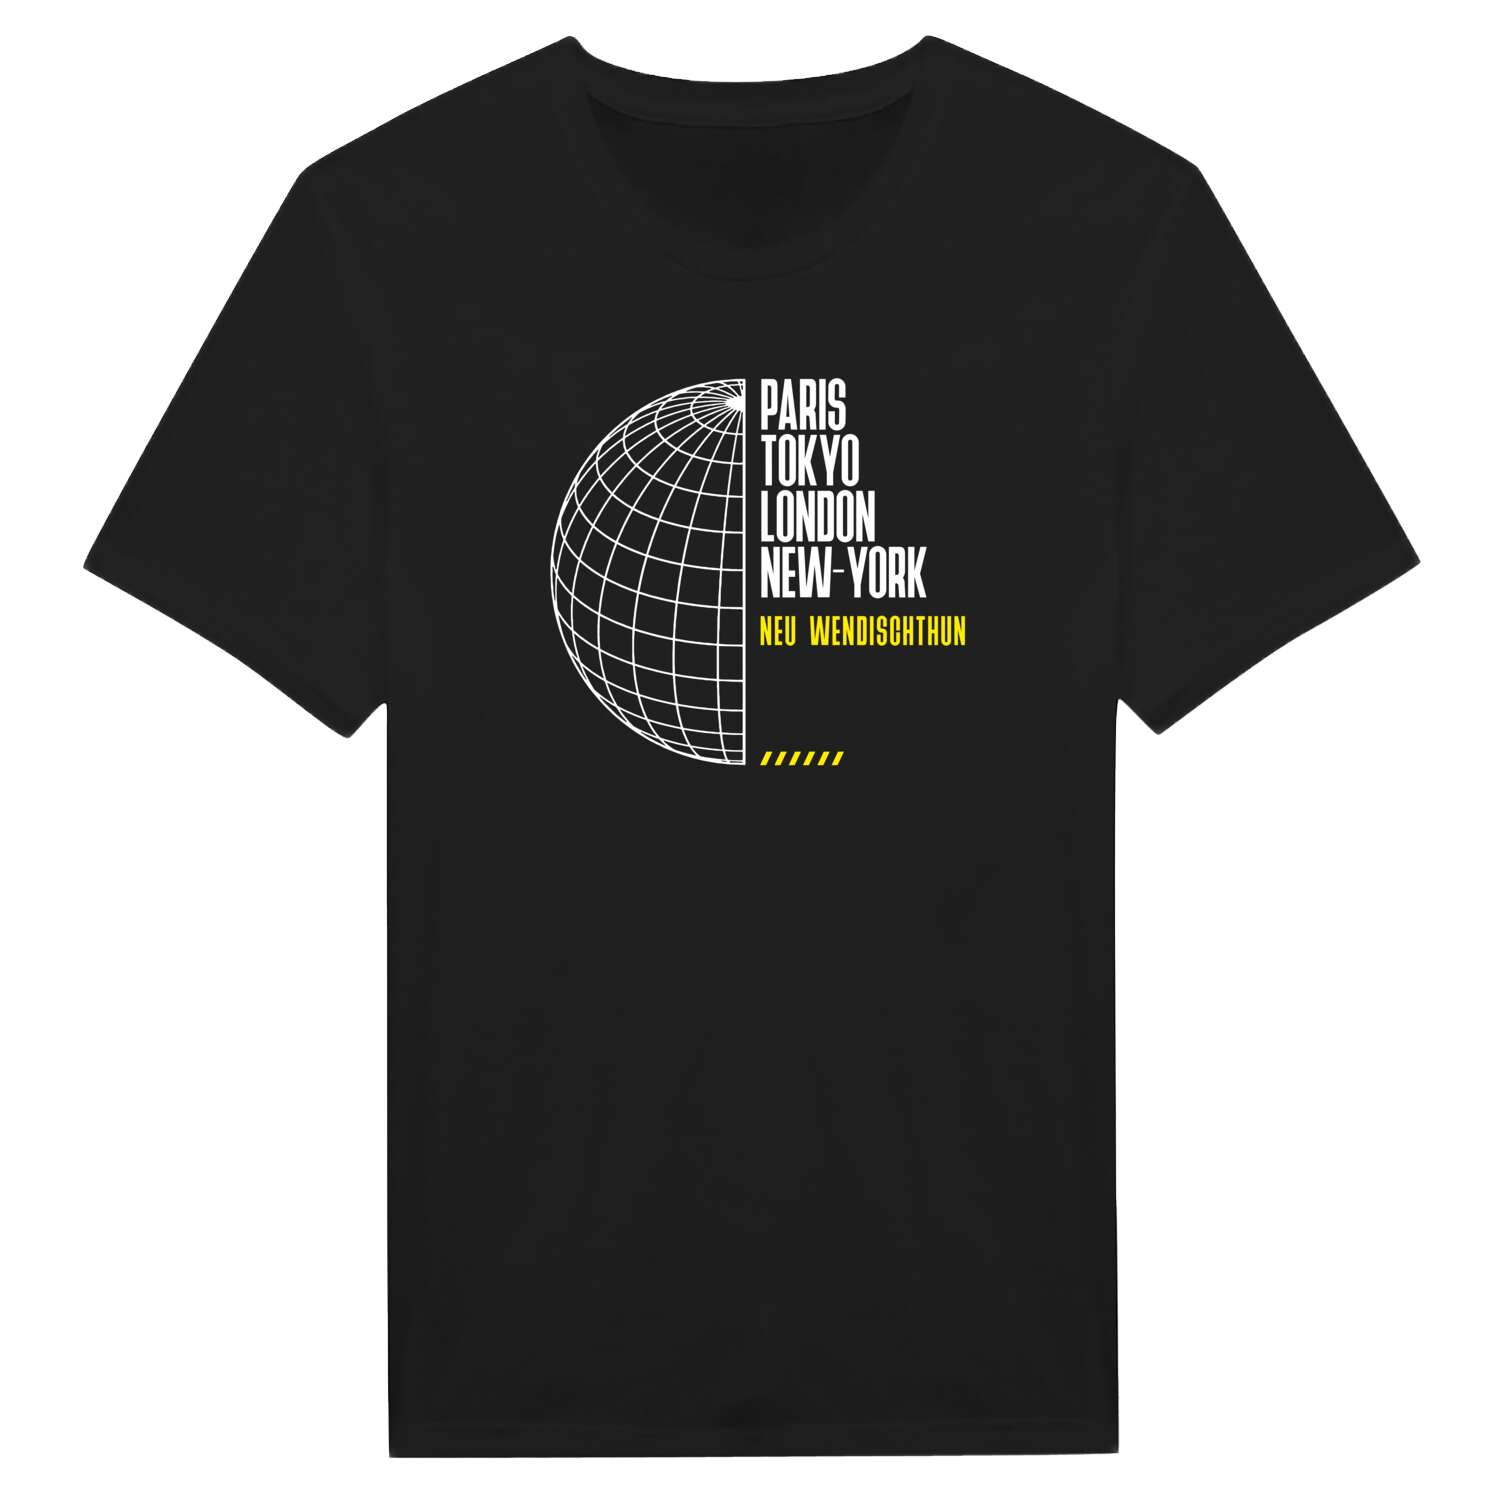 Neu Wendischthun T-Shirt »Paris Tokyo London«